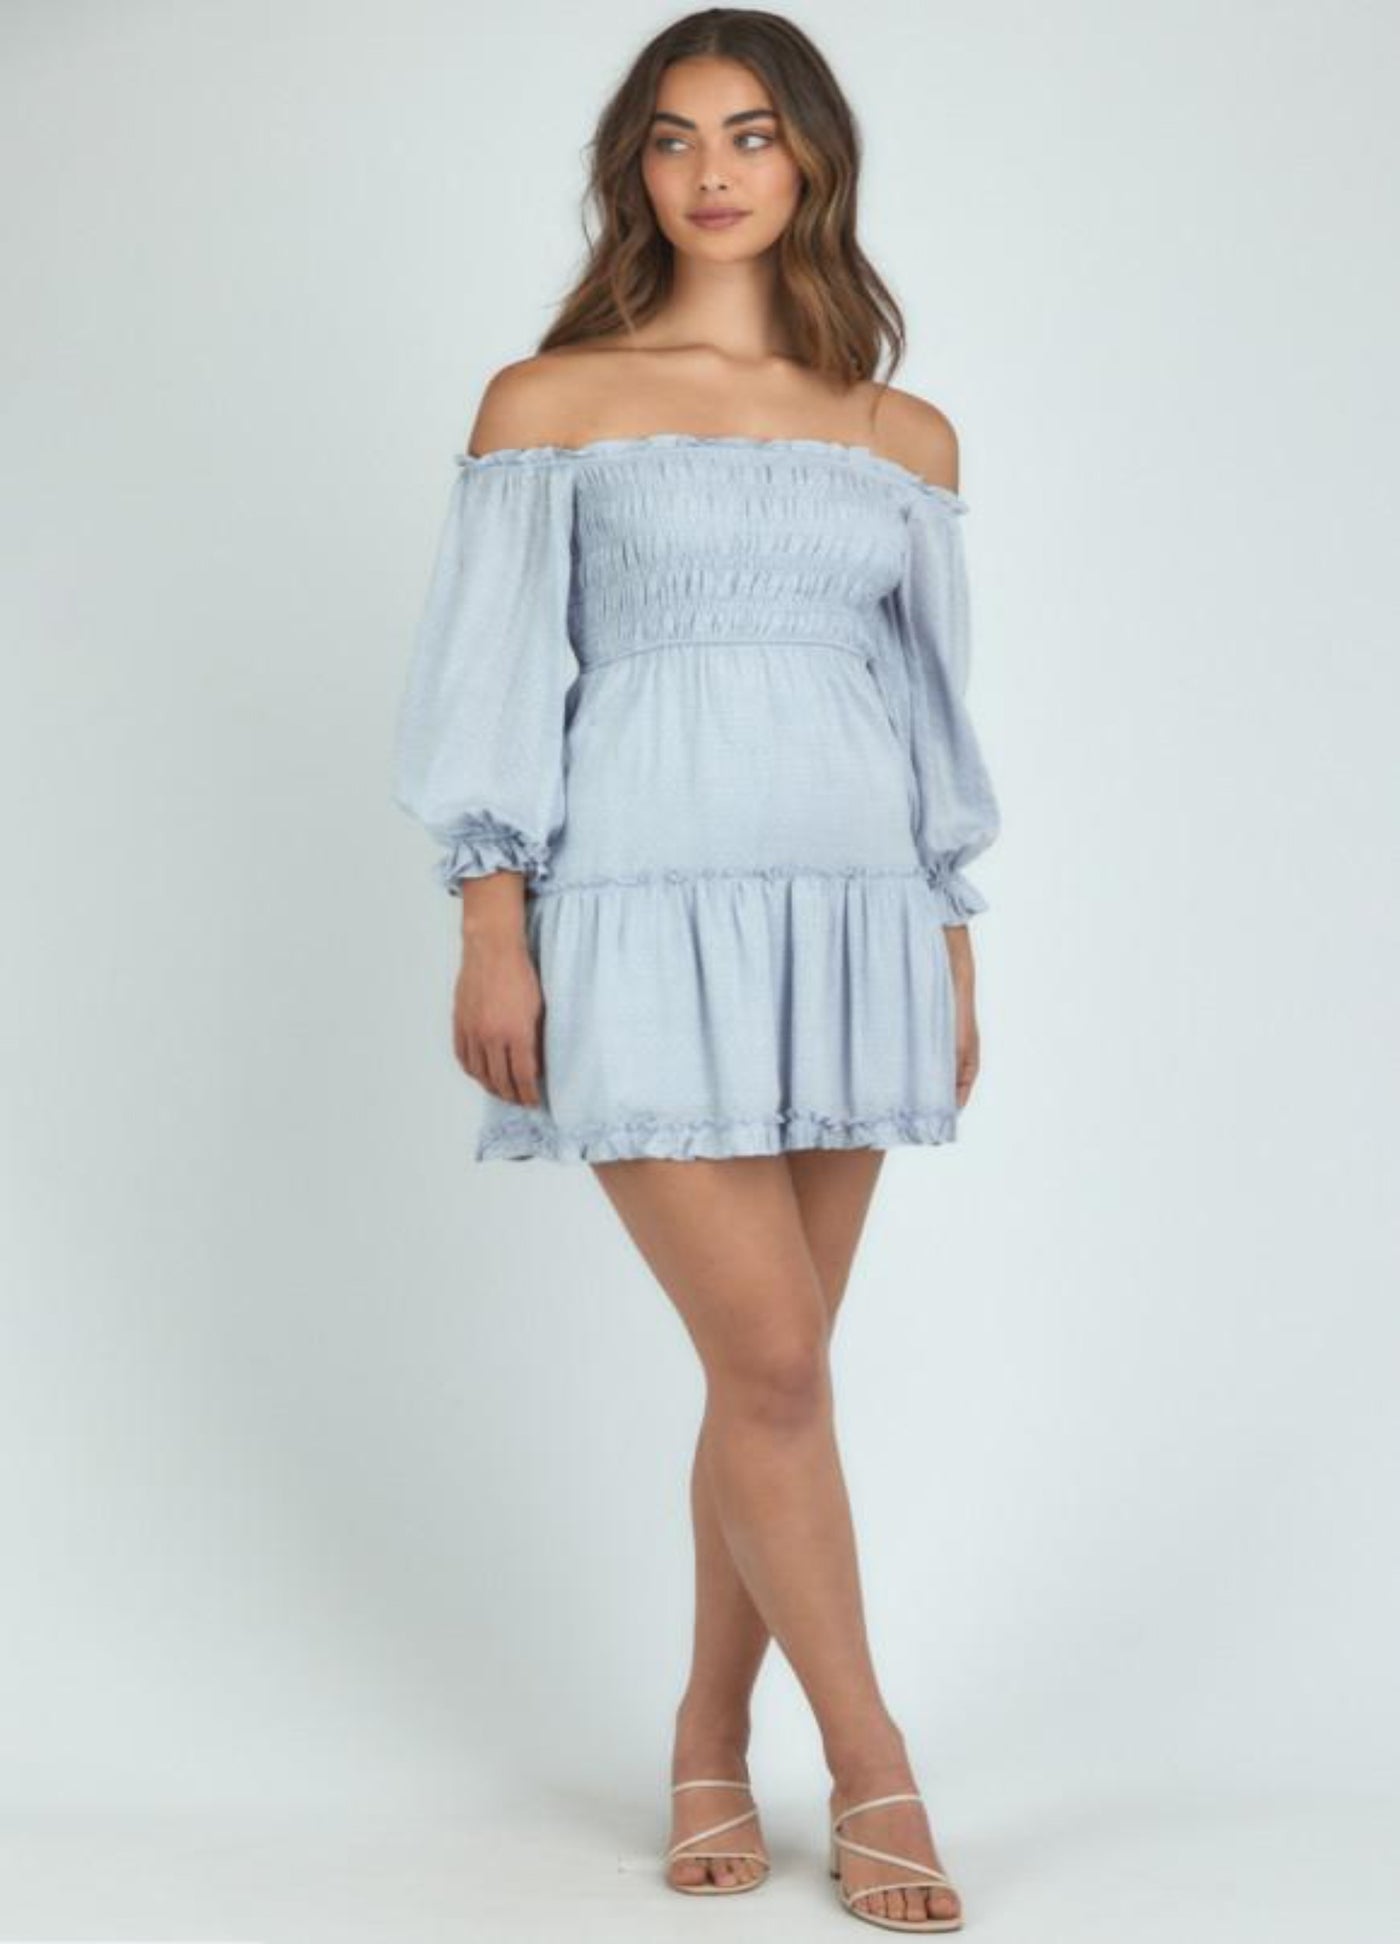 Brunette Model wearing the Mia bodice dress in pale blue